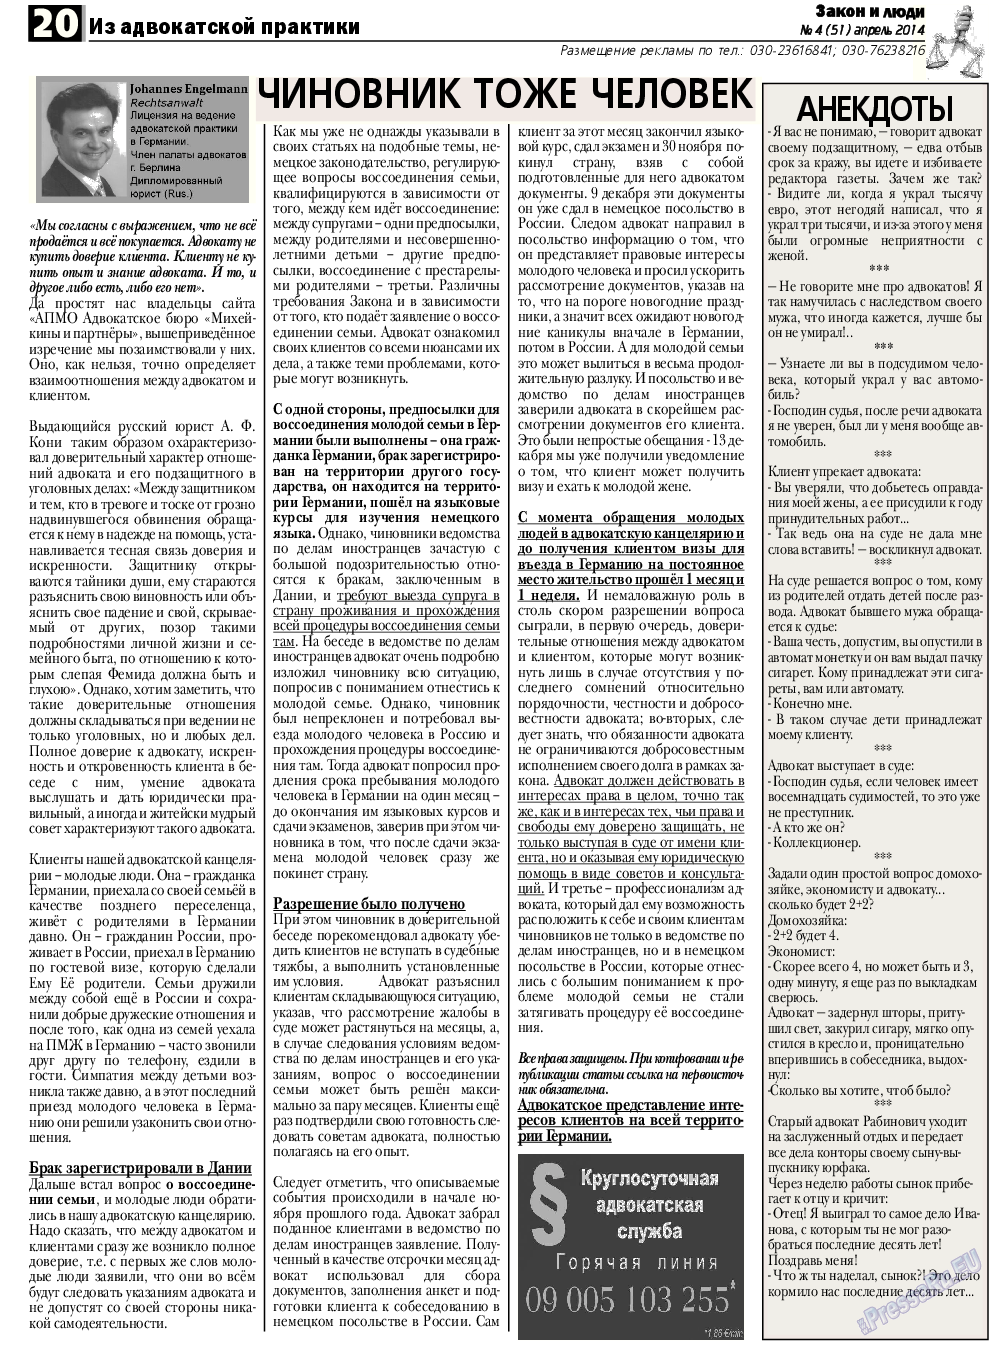 Закон и люди, газета. 2014 №4 стр.20